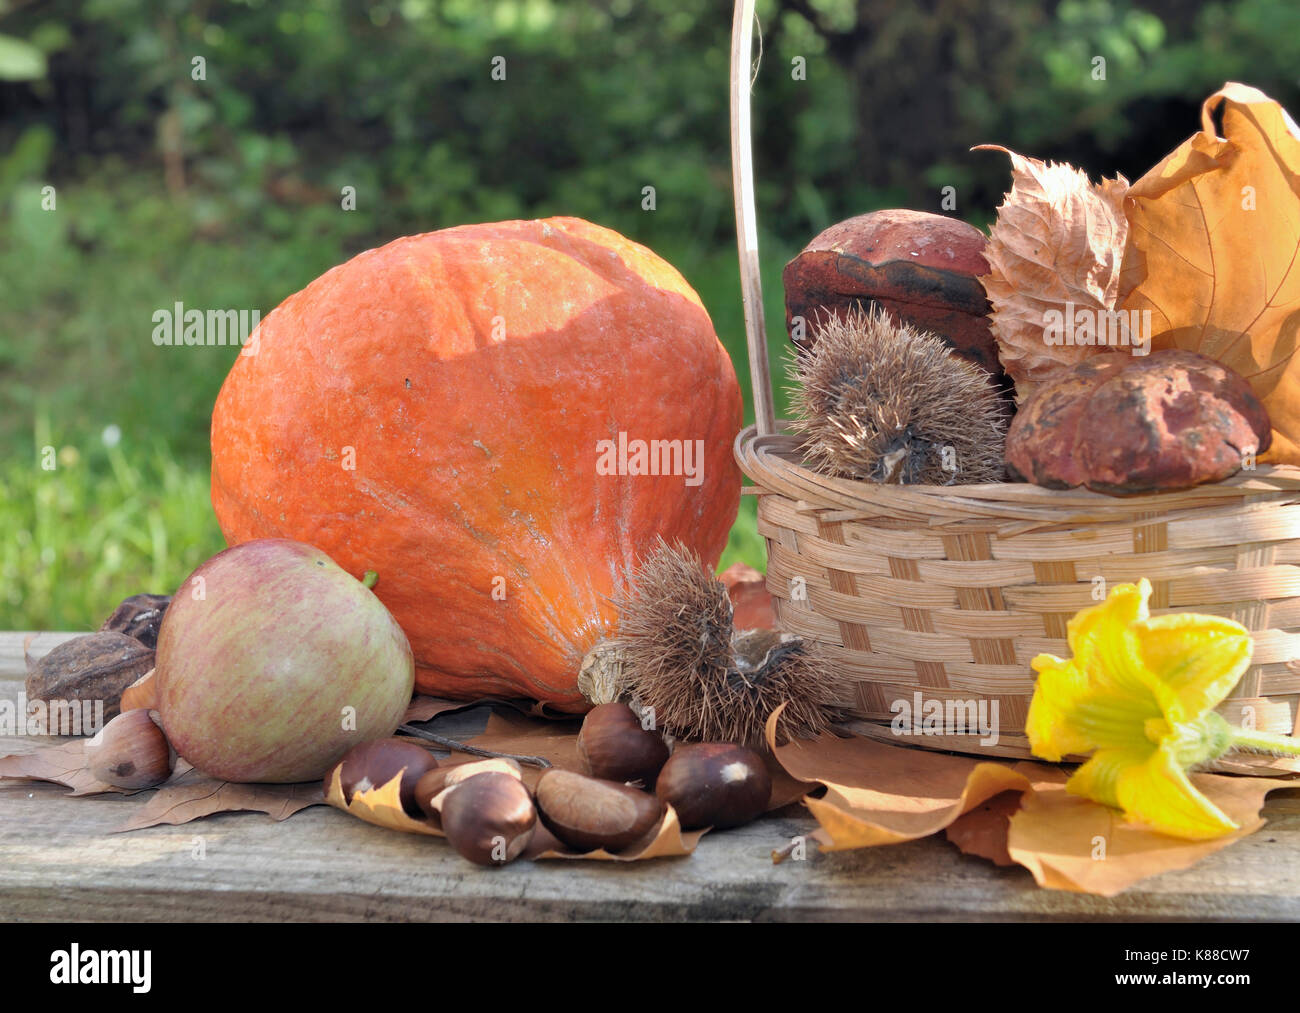 Fruits et légumes d'automne sur une table dans un jardin Banque D'Images